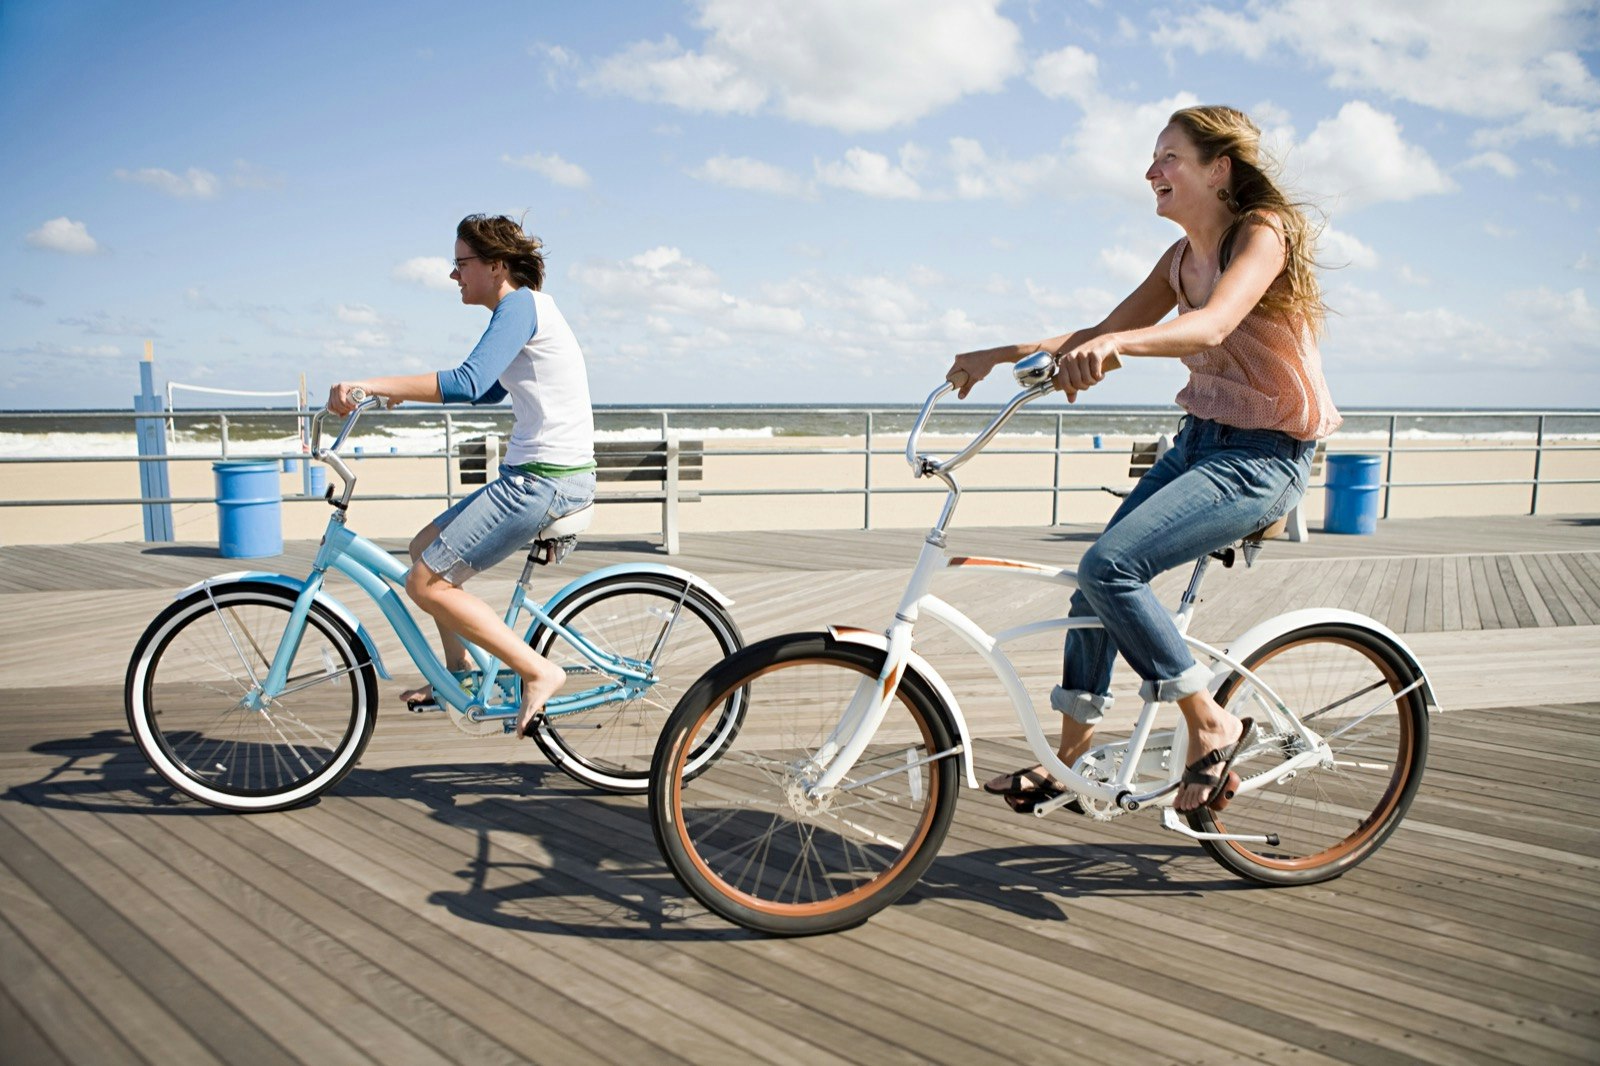 Two people ride bikes down a boardwalk 